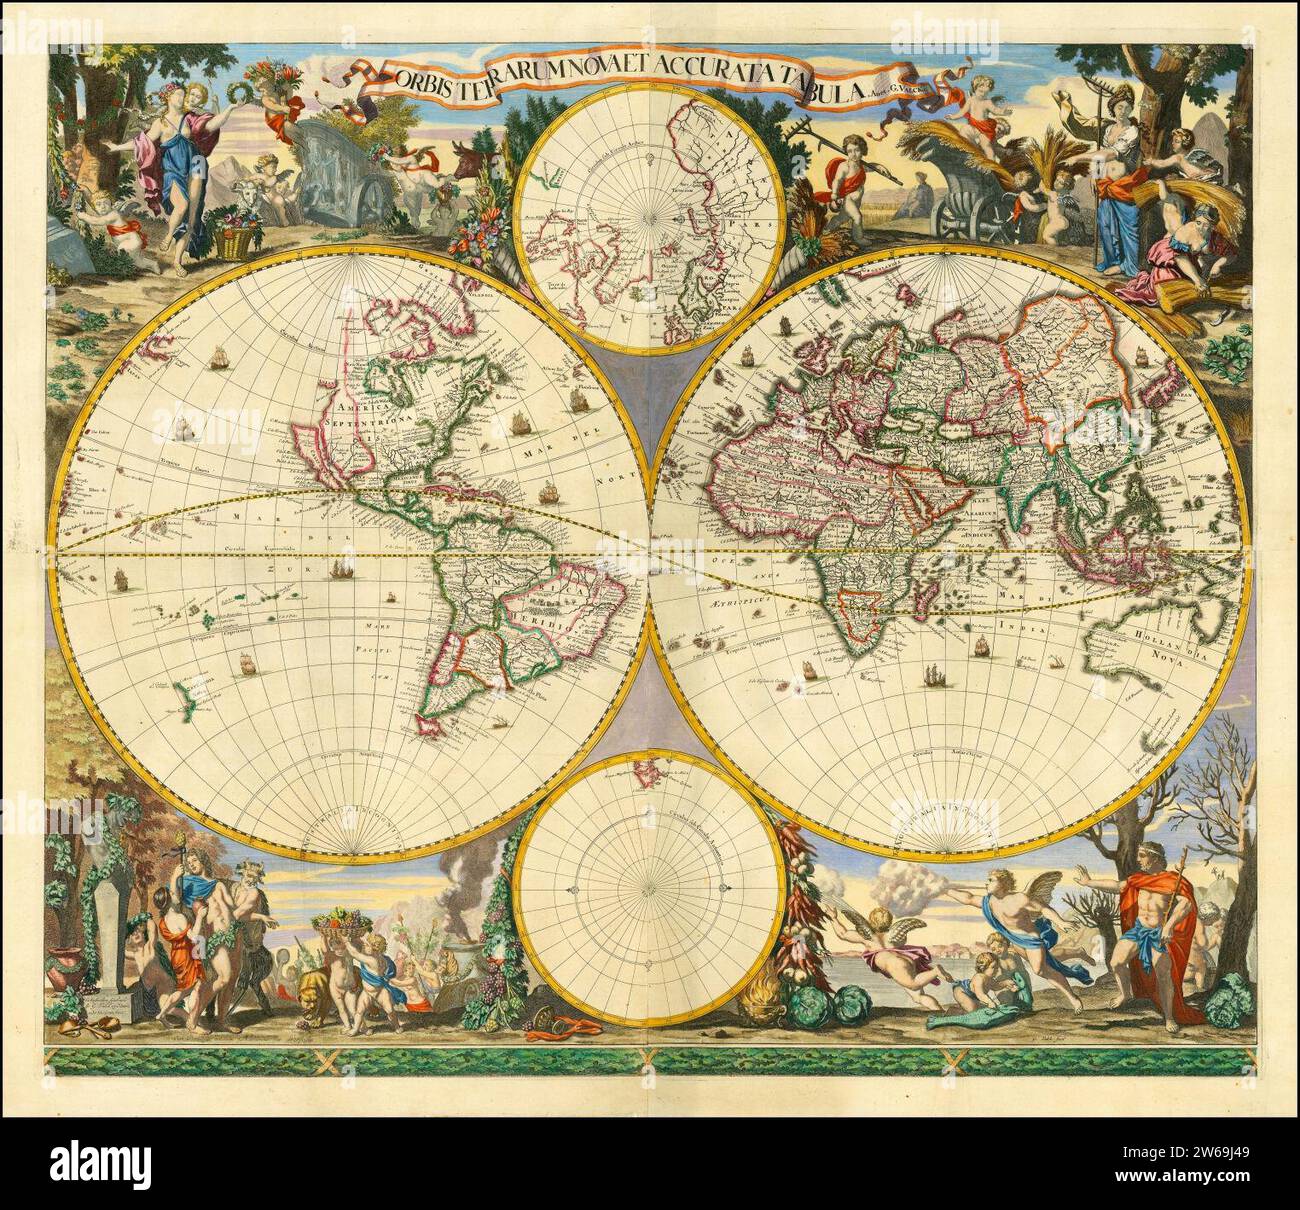 Ca. 1690 world map - Orbis Terrarum Nova et Accurata Tabula. Stock Photo